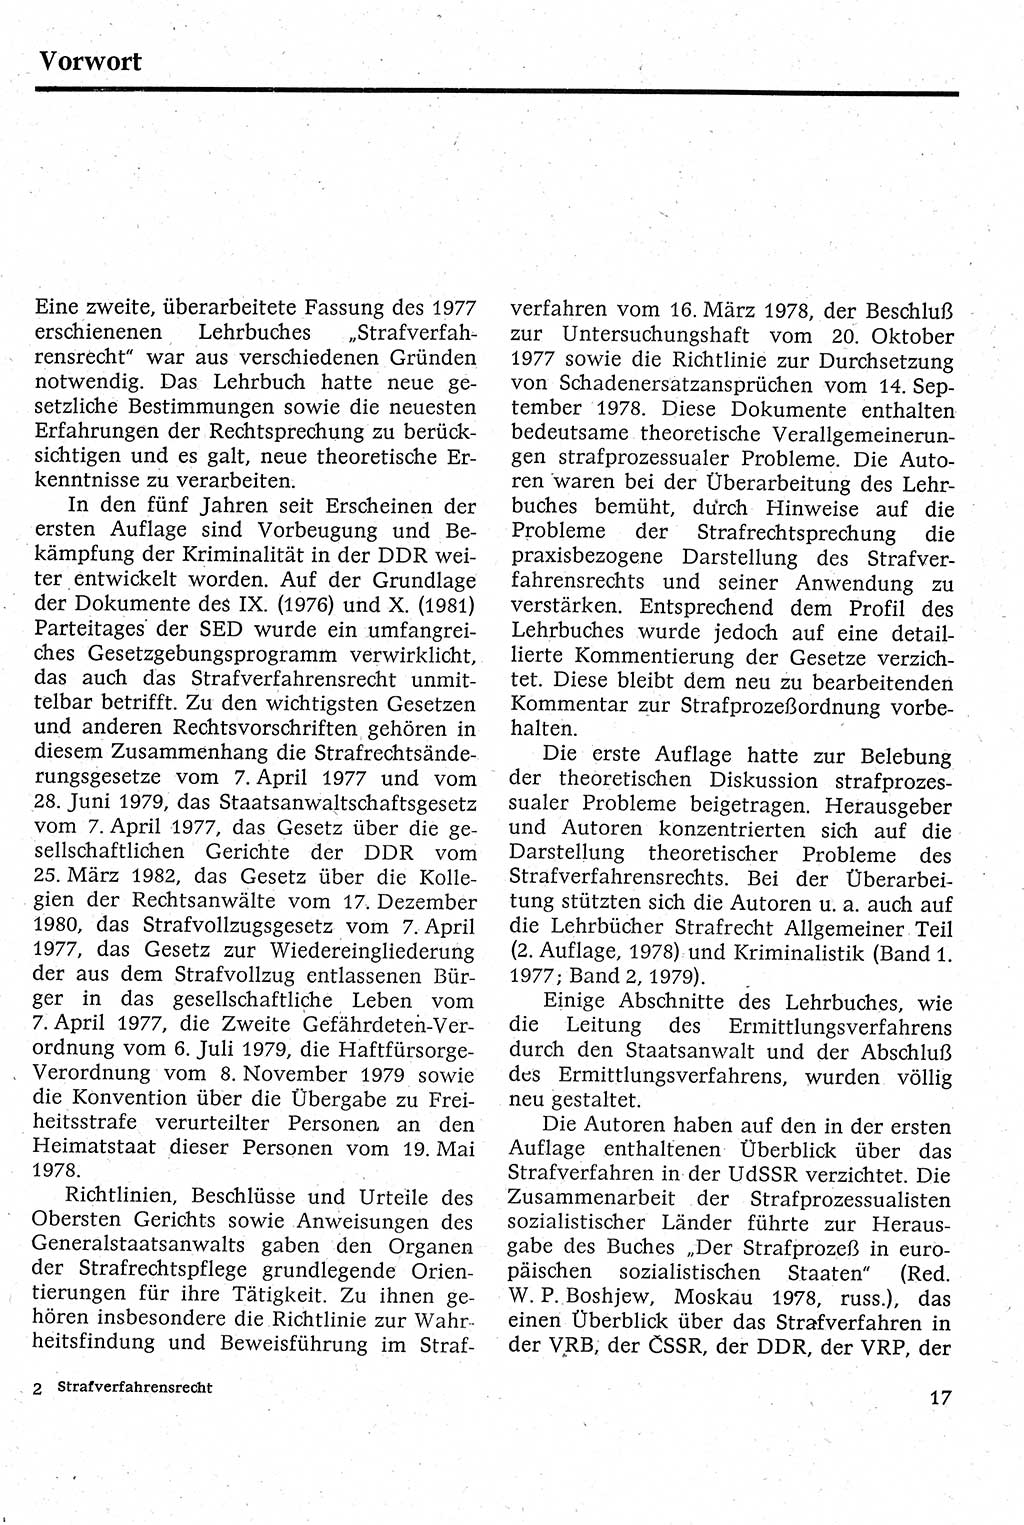 Strafverfahrensrecht [Deutsche Demokratische Republik (DDR)], Lehrbuch 1982, Seite 17 (Strafverf.-R. DDR Lb. 1982, S. 17)